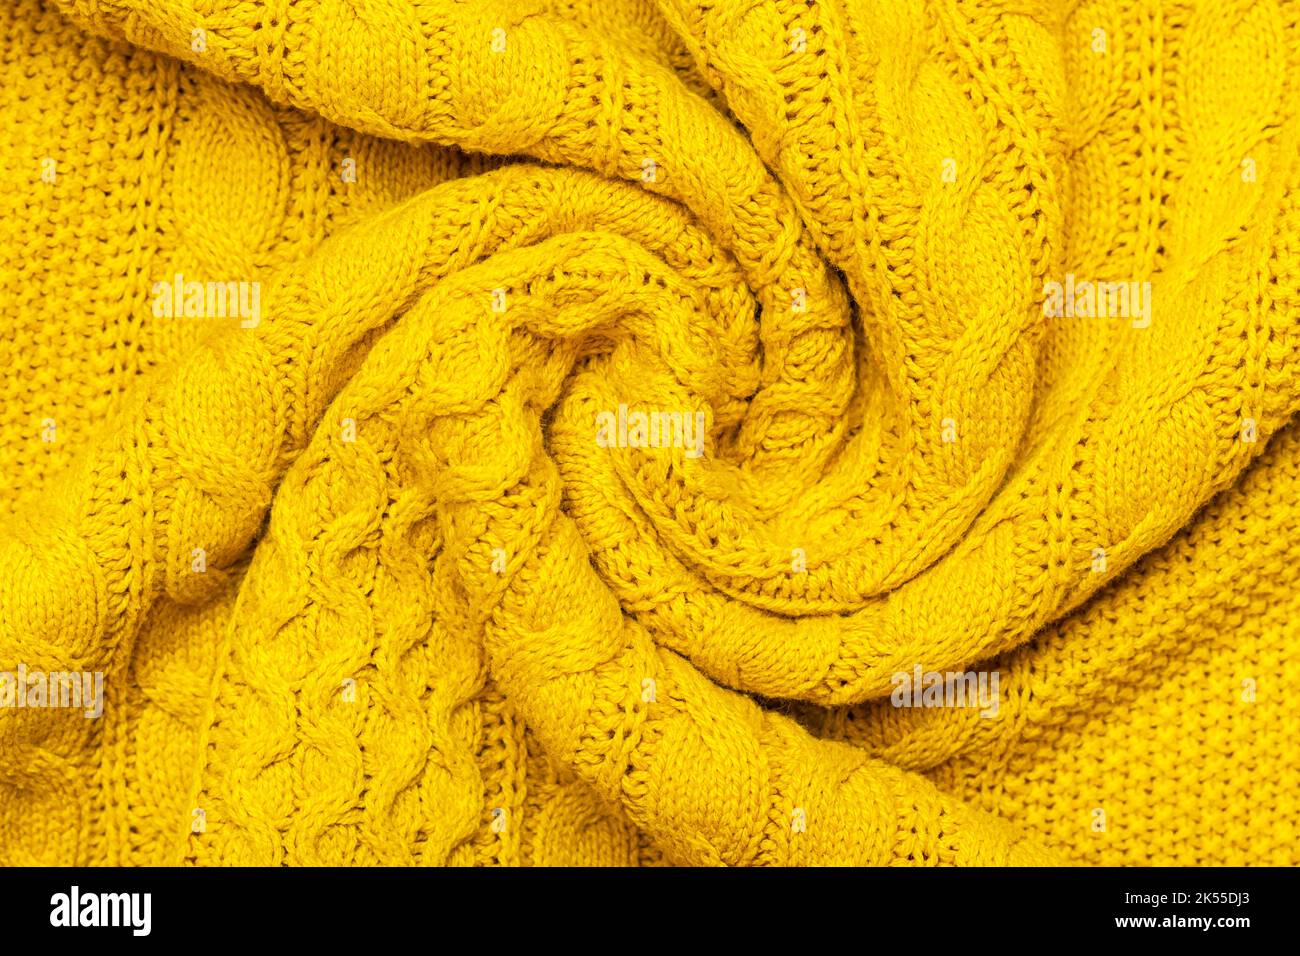 Maglione giallo senape immagini e fotografie stock ad alta risoluzione -  Alamy